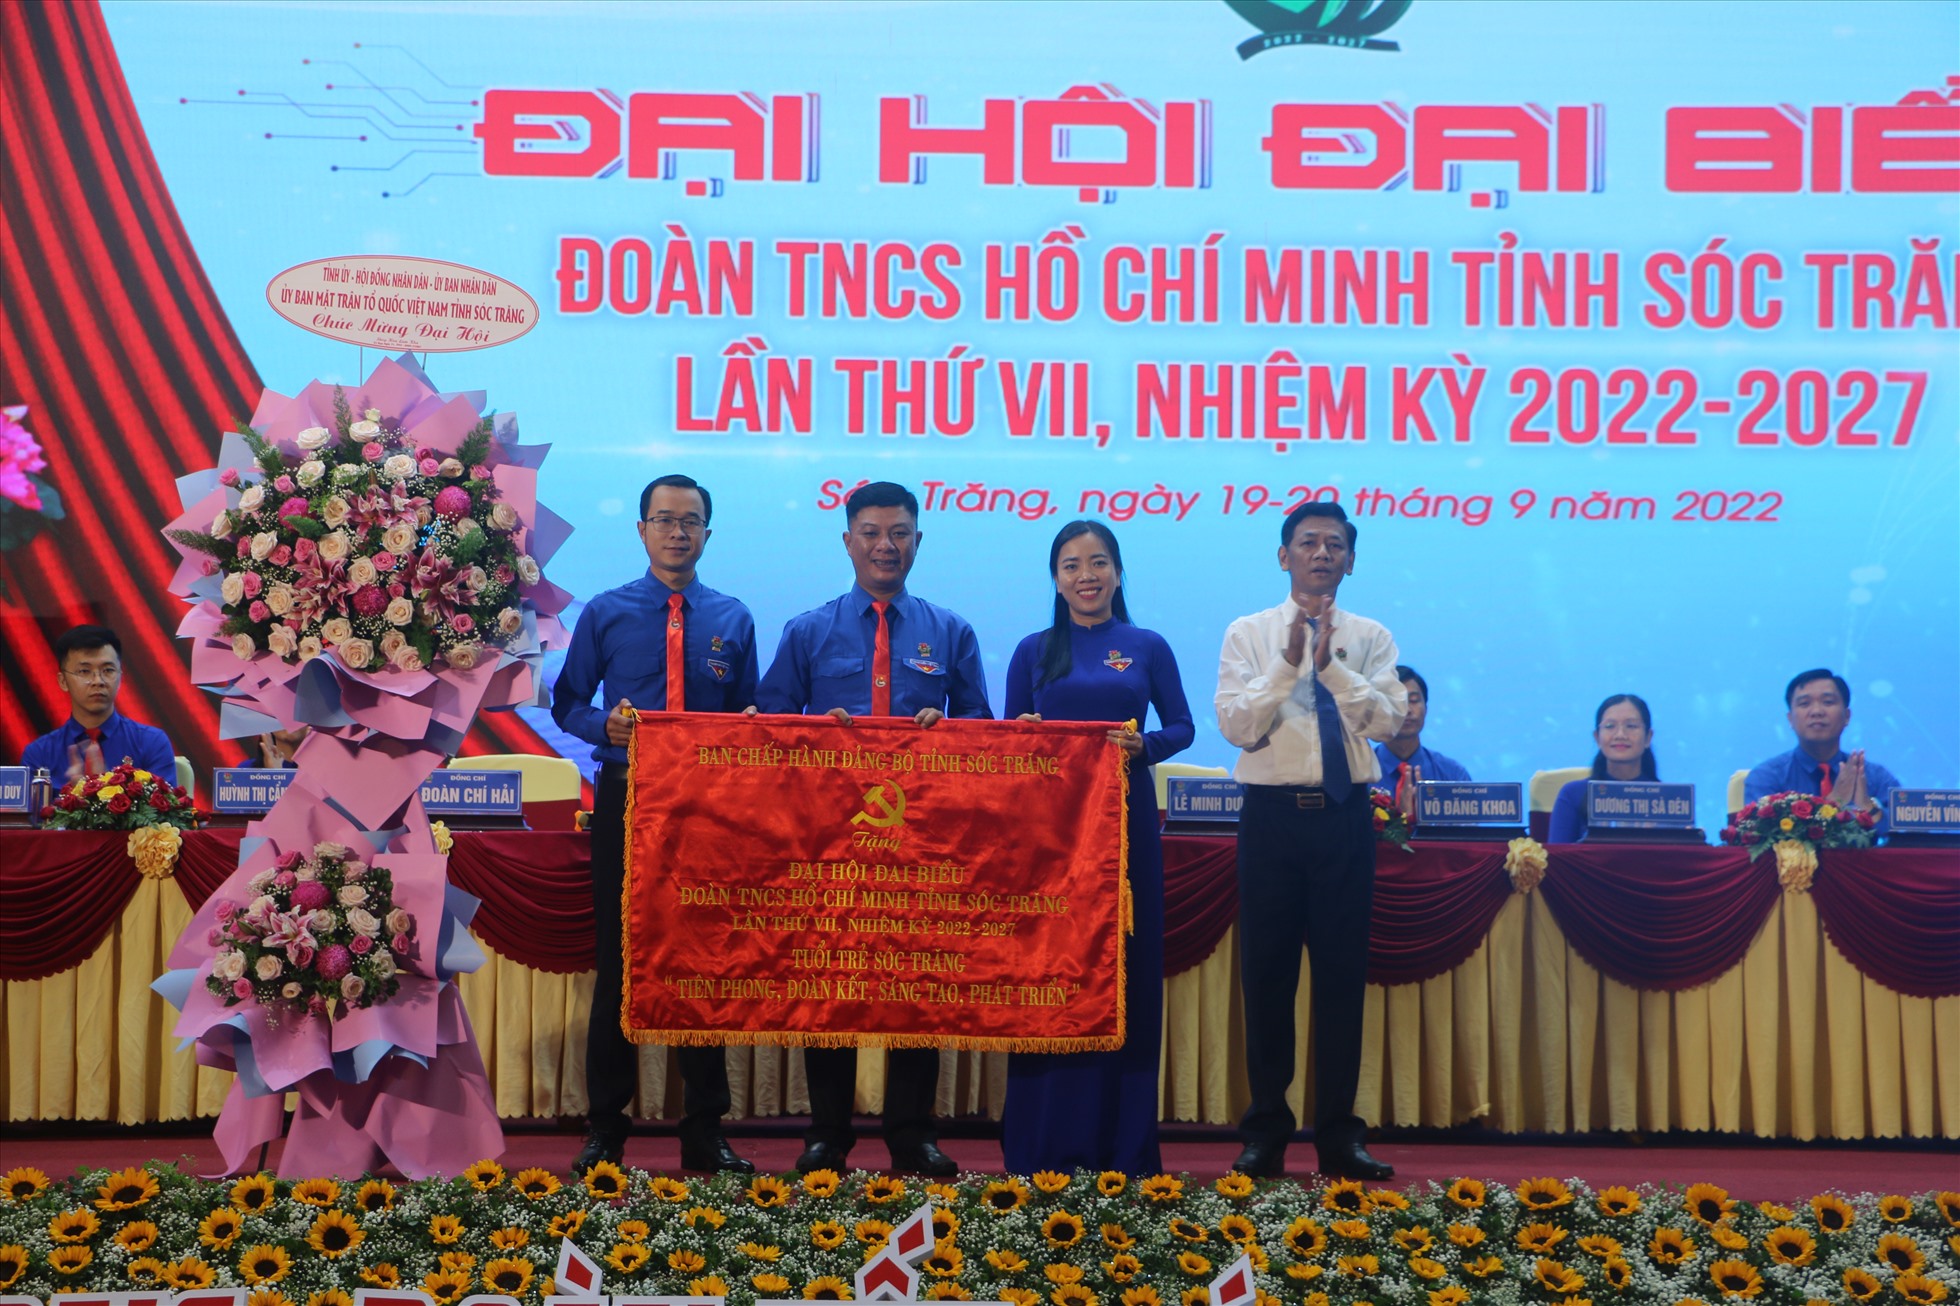 Bí thư Tỉnh ủy Sóc Trăng Lâm Văn Mẫn trao bức trướng của BCH Đảng bộ tỉnh cho Đại hội